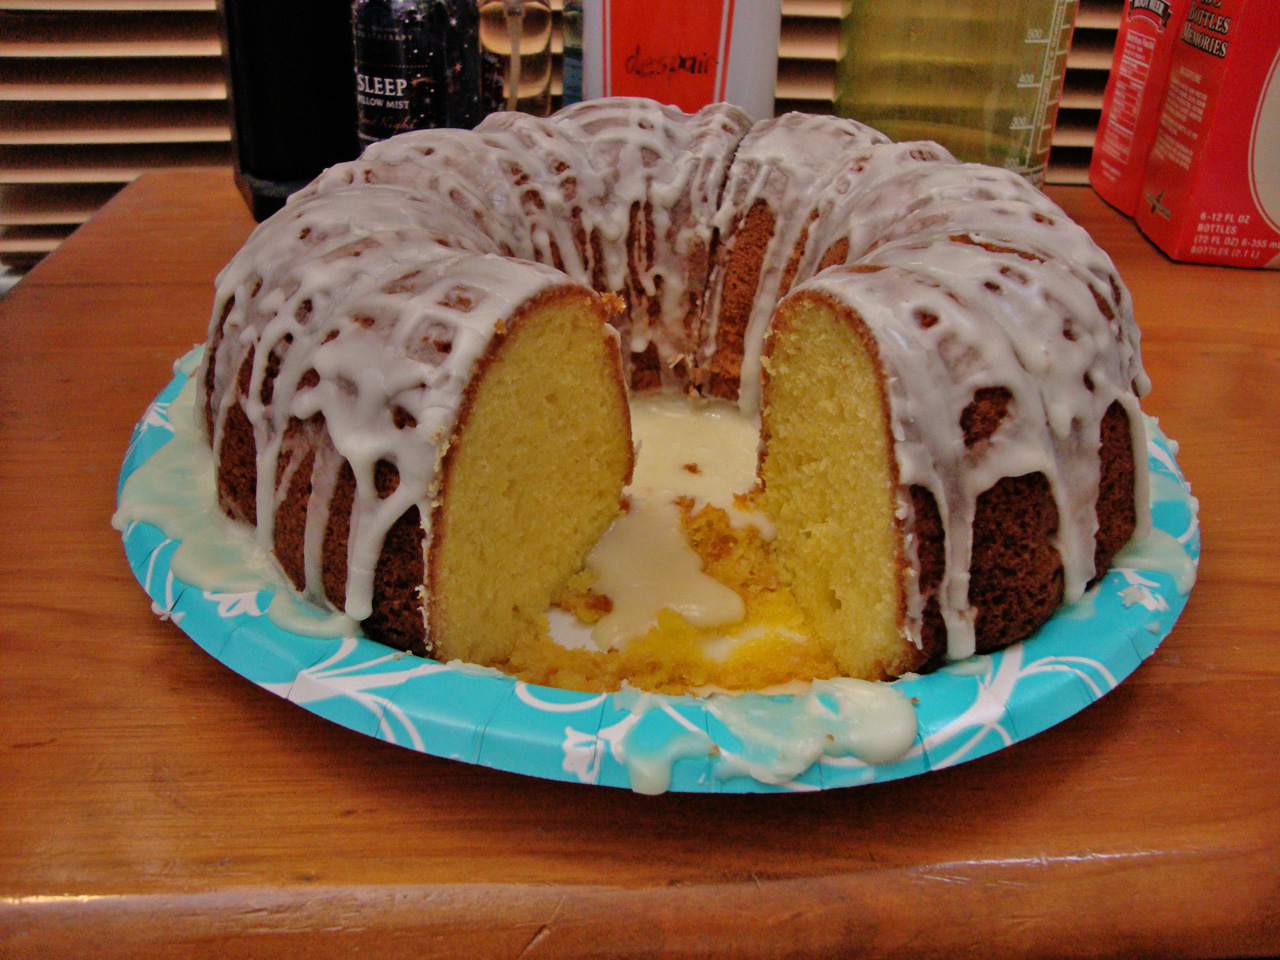 https://upload.wikimedia.org/wikipedia/commons/5/5d/Glazed_Lemon_Bundt_Cake.jpg